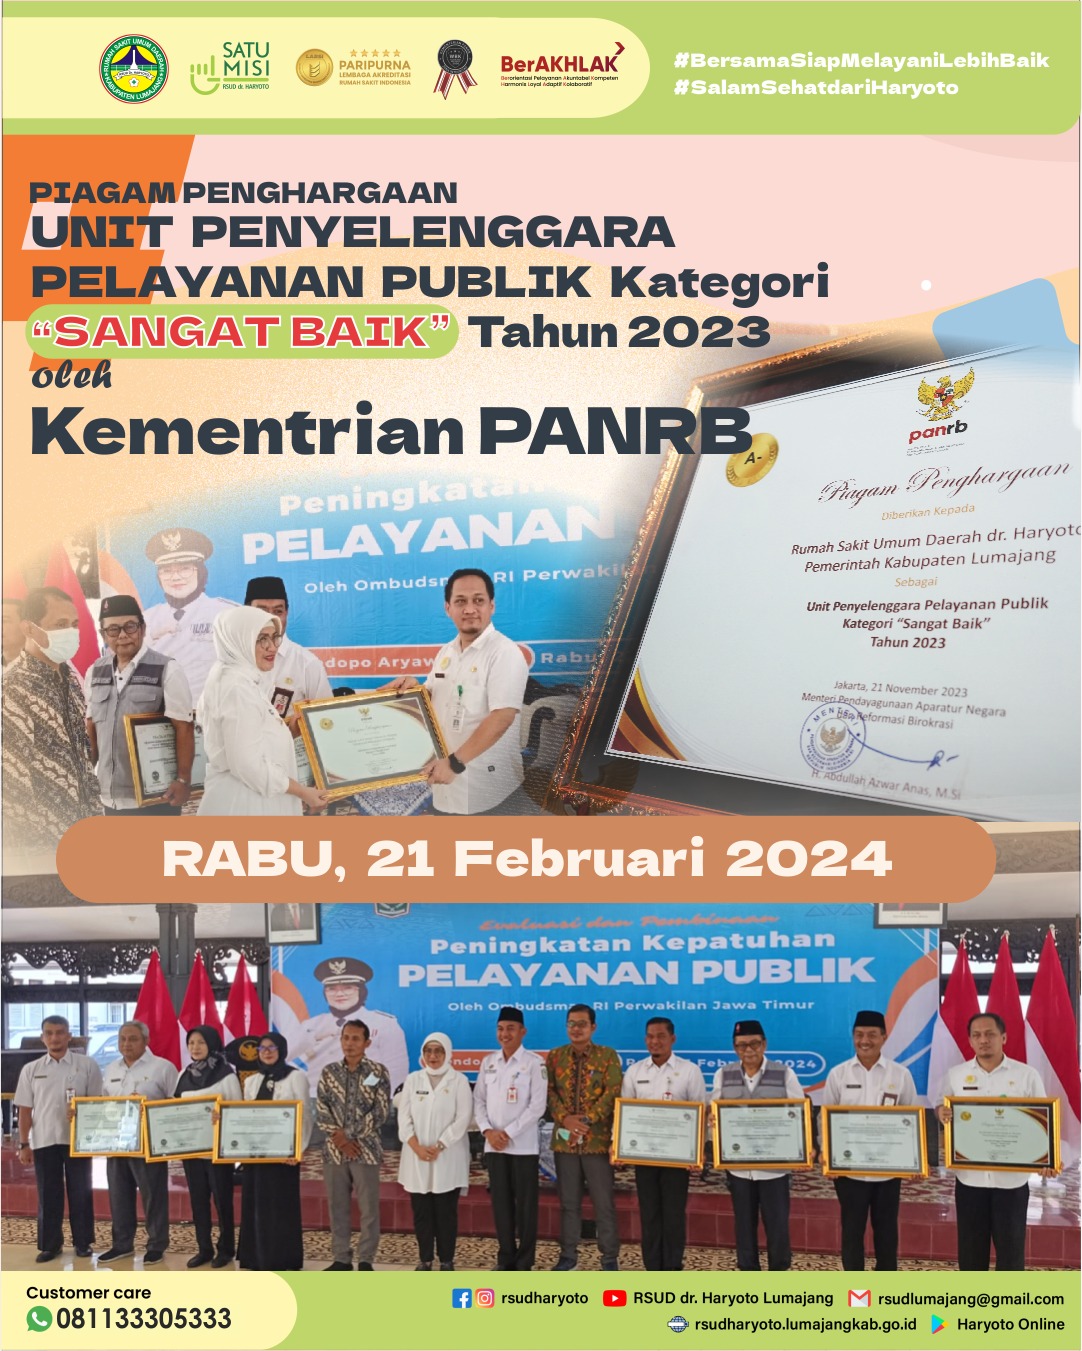 Penghargaan oleh Kementerian PANRB sebagai Unit Penyelenggara Pelayanan Publik Kategori 